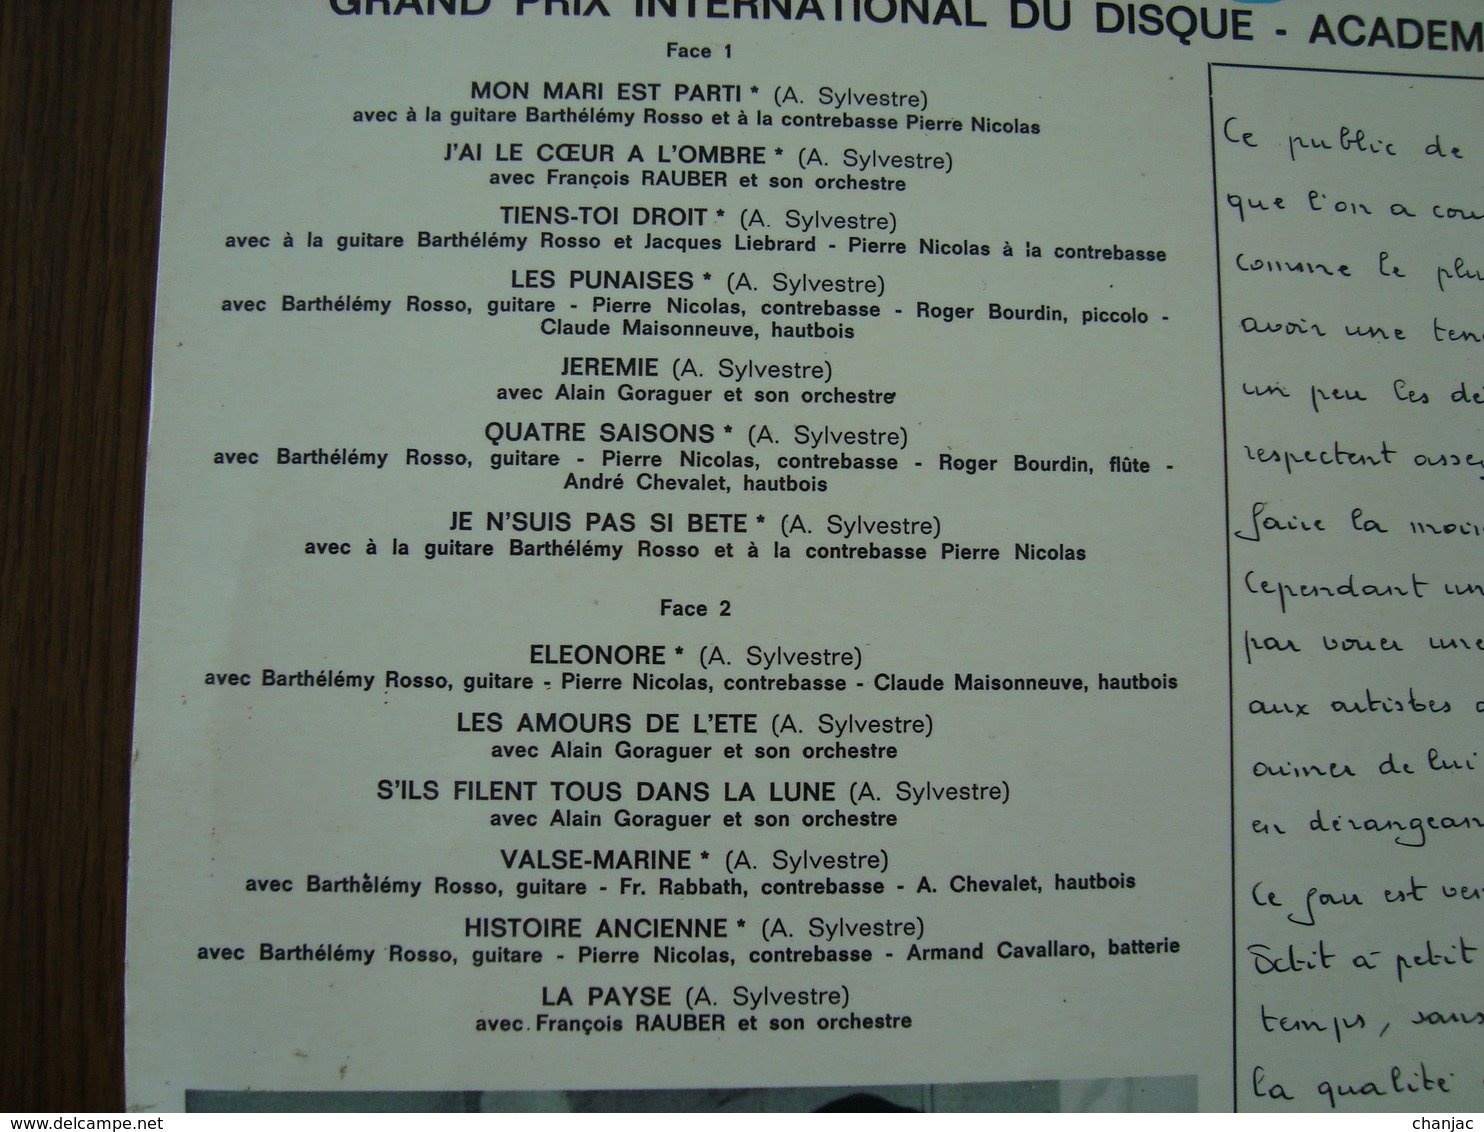 33 Tours: ANNE SYLVESTRE - MON MARI EST PARTI + 12 - Philips 844.851 BY (1961) - Autres - Musique Française